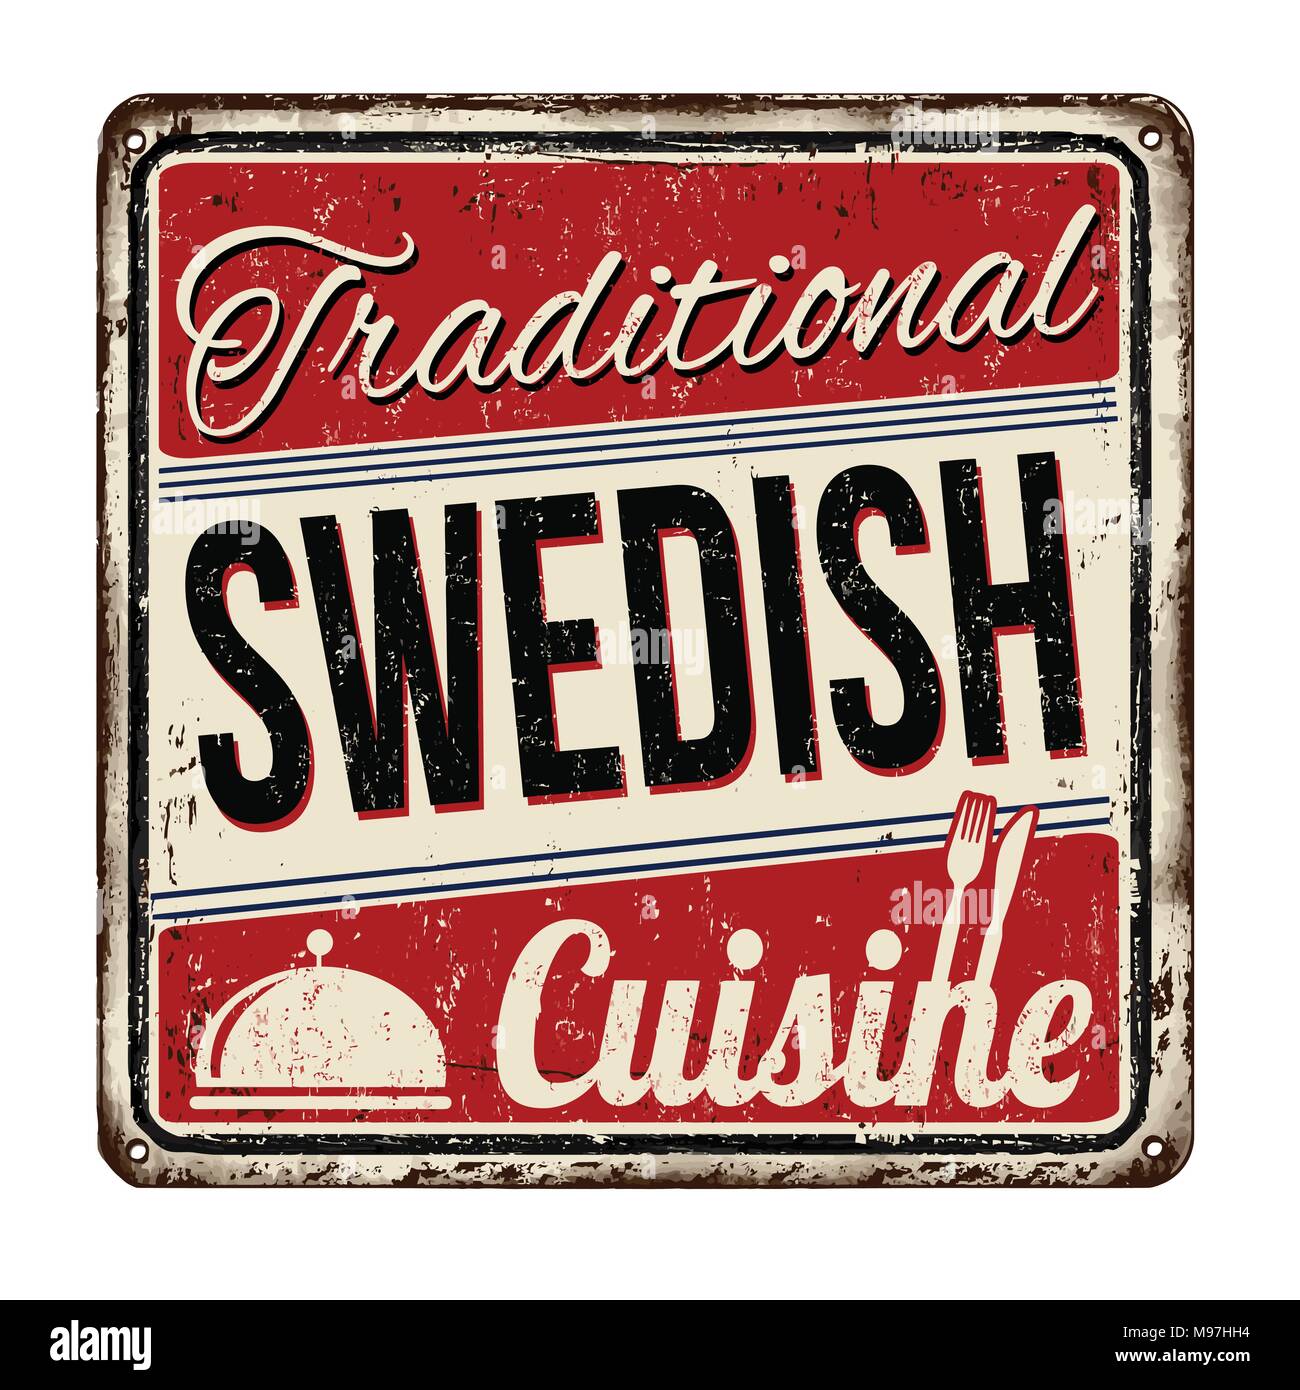 Traditionelle schwedische Küche vintage rostiges Metall Zeichen auf weißem Hintergrund, Vector Illustration Stock Vektor